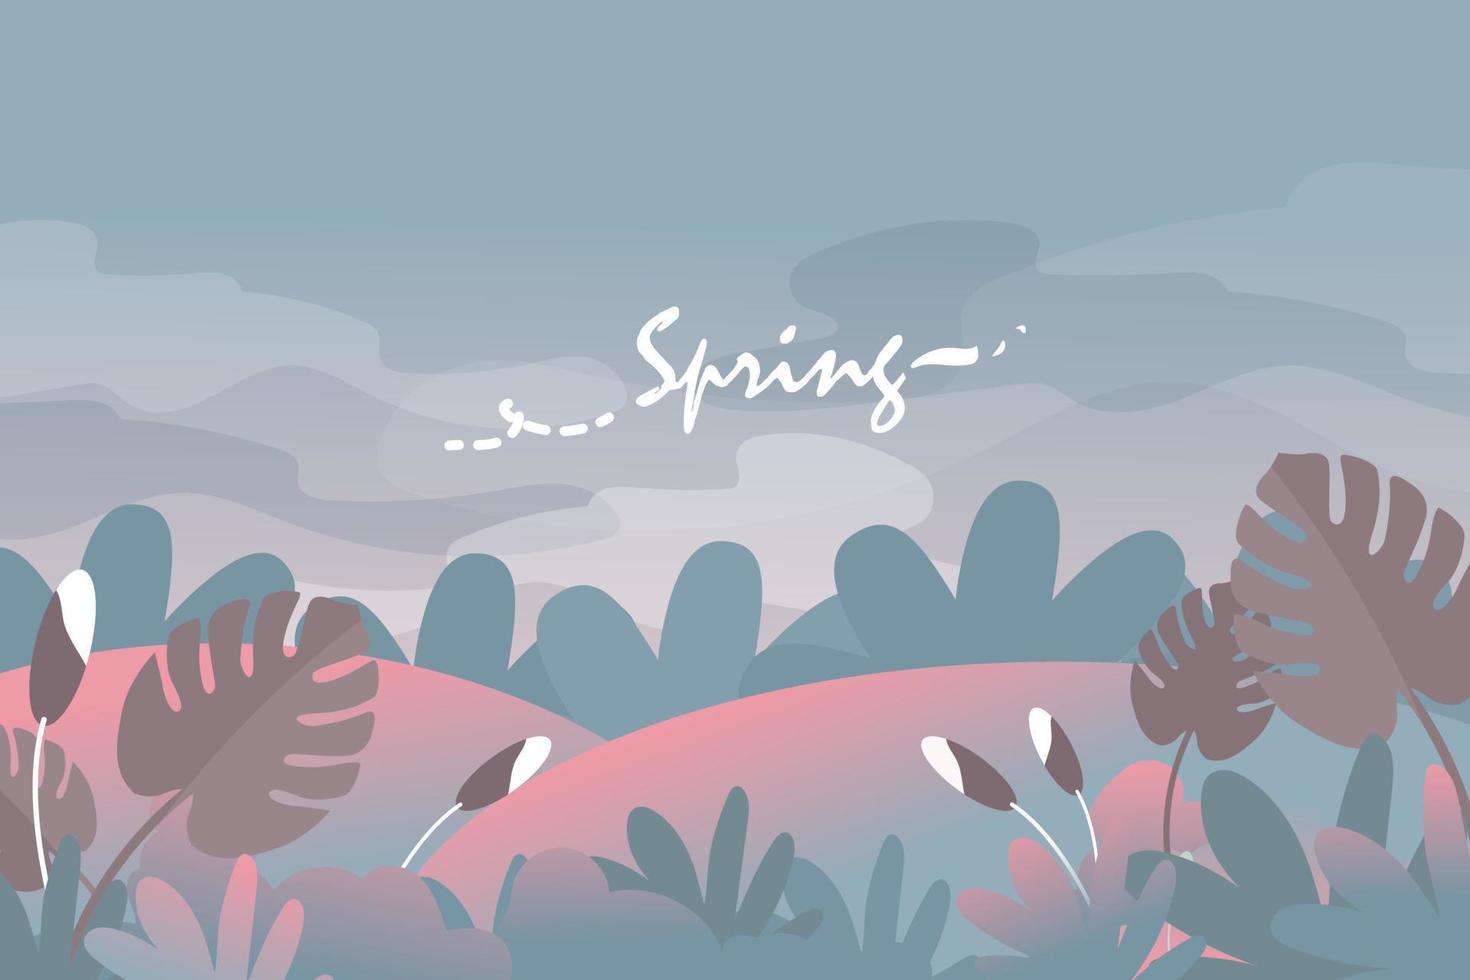 diseño de fondo o banner de ambiente de primavera y verano con hermosas flores, hojas, montaña, paisaje y elemento de cielo. ilustración vectorial eps10 vector